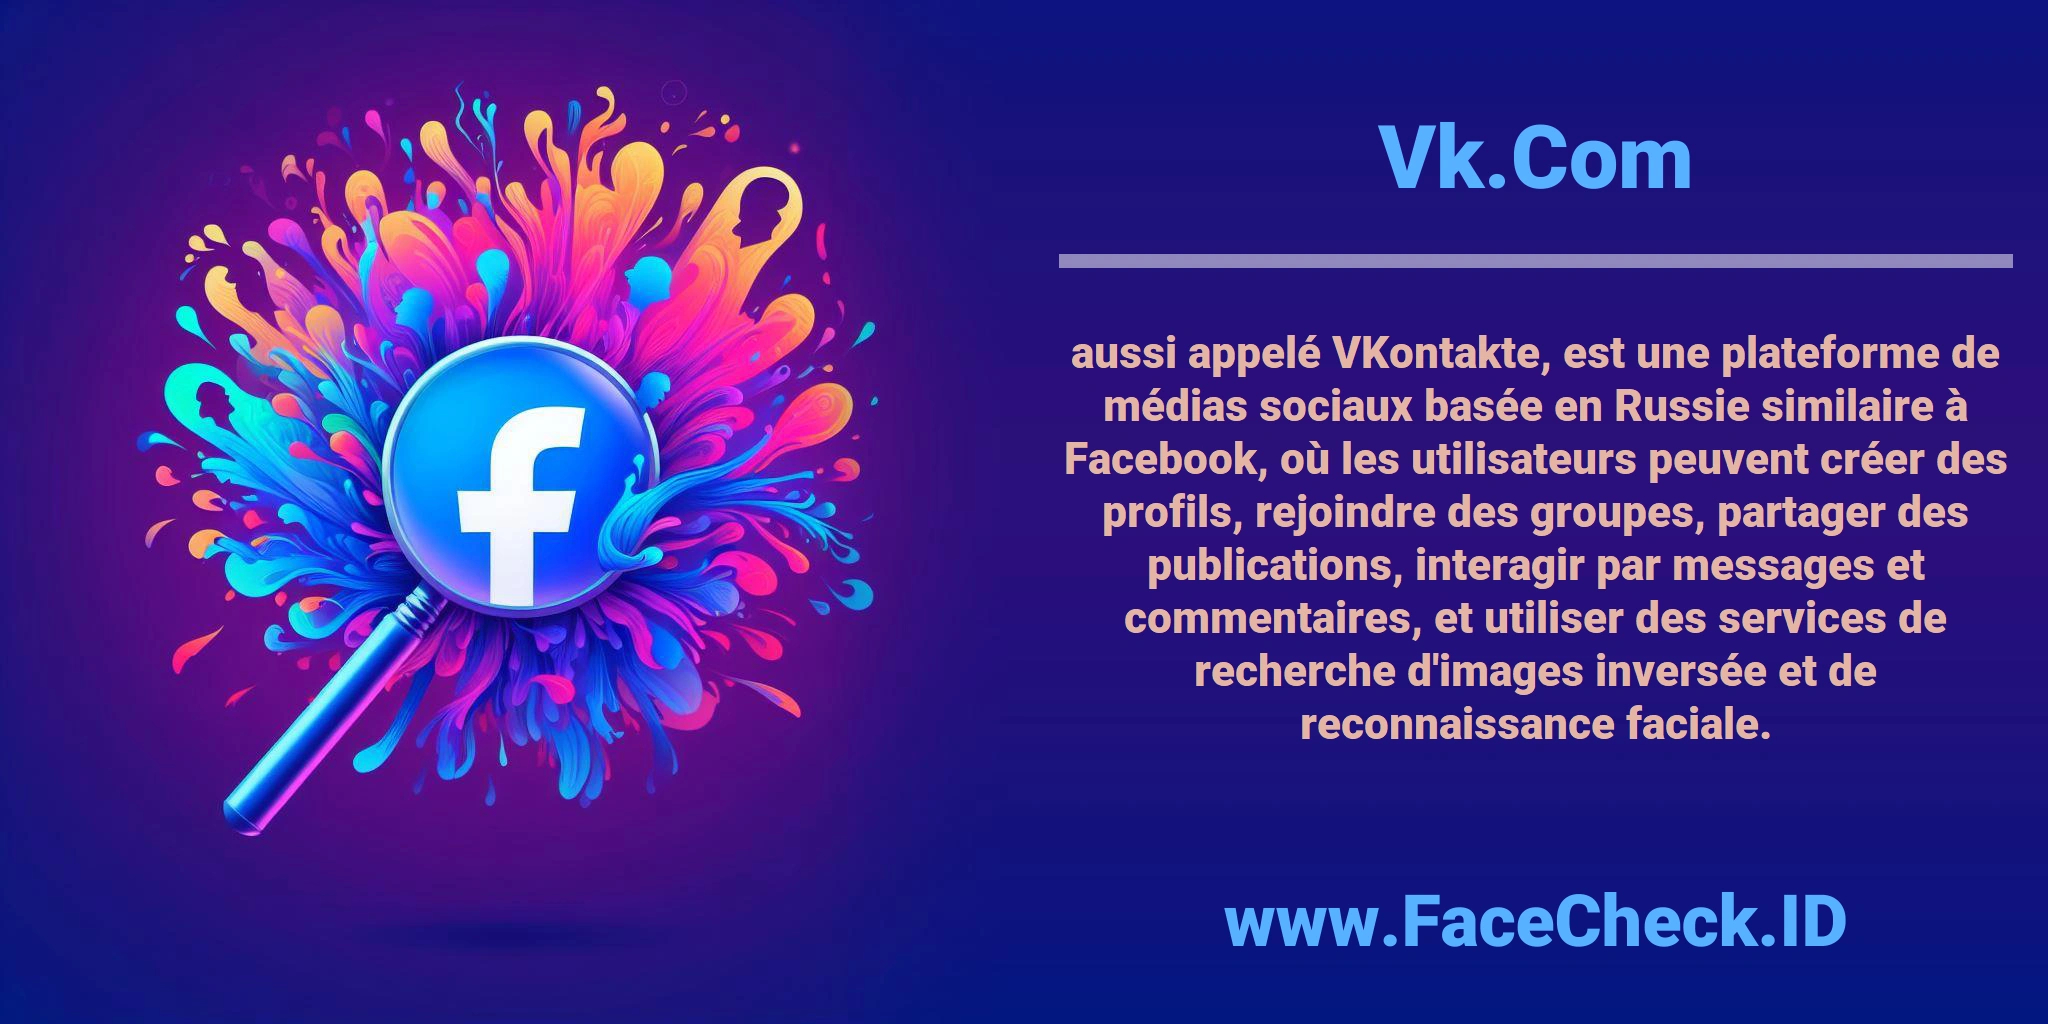 <b>Vk.Com</b> aussi appelé VKontakte, est une plateforme de médias sociaux basée en Russie similaire à Facebook, où les utilisateurs peuvent créer des profils, rejoindre des groupes, partager des publications, interagir par messages et commentaires, et utiliser des services de recherche d'images inversée et de reconnaissance faciale.